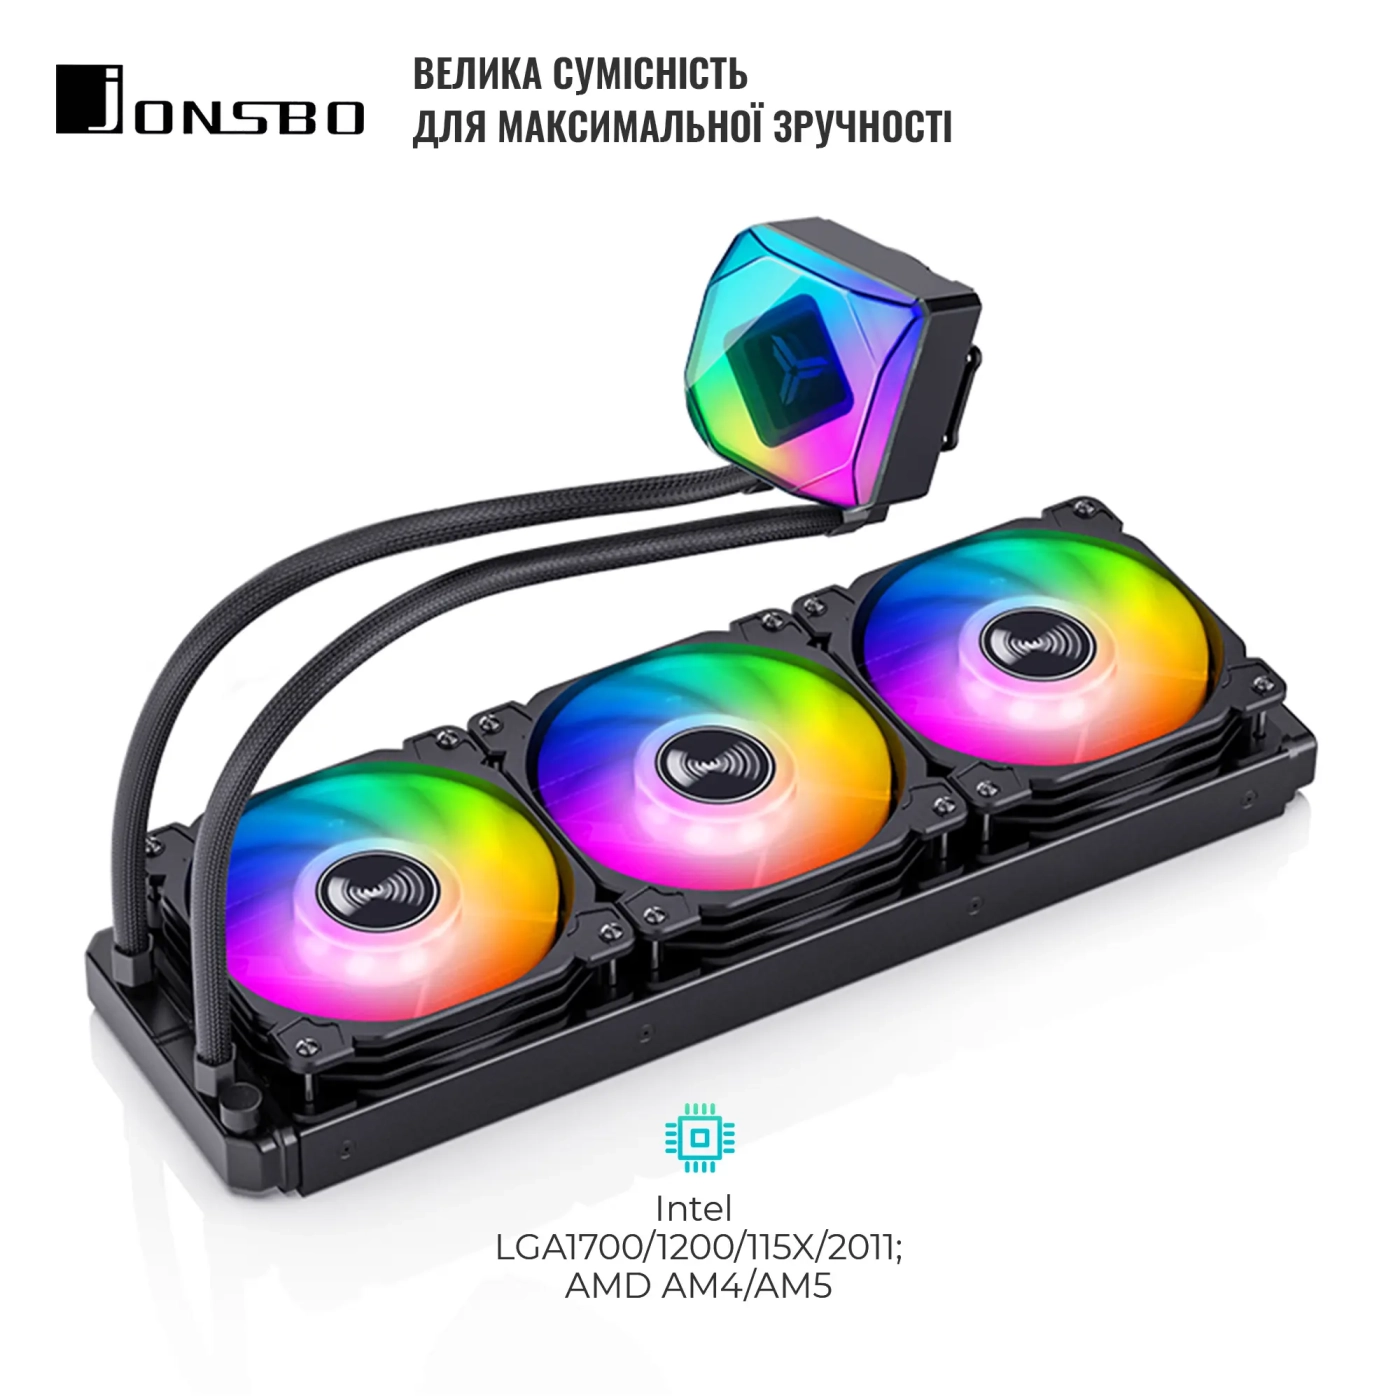 Купить Система жидкостного охлаждения JONSBO TW6-360 ARGB Black (Intel LGA1700/1200/115X/2011 AMD AM4/AM5/4PIN PWM) - фото 5